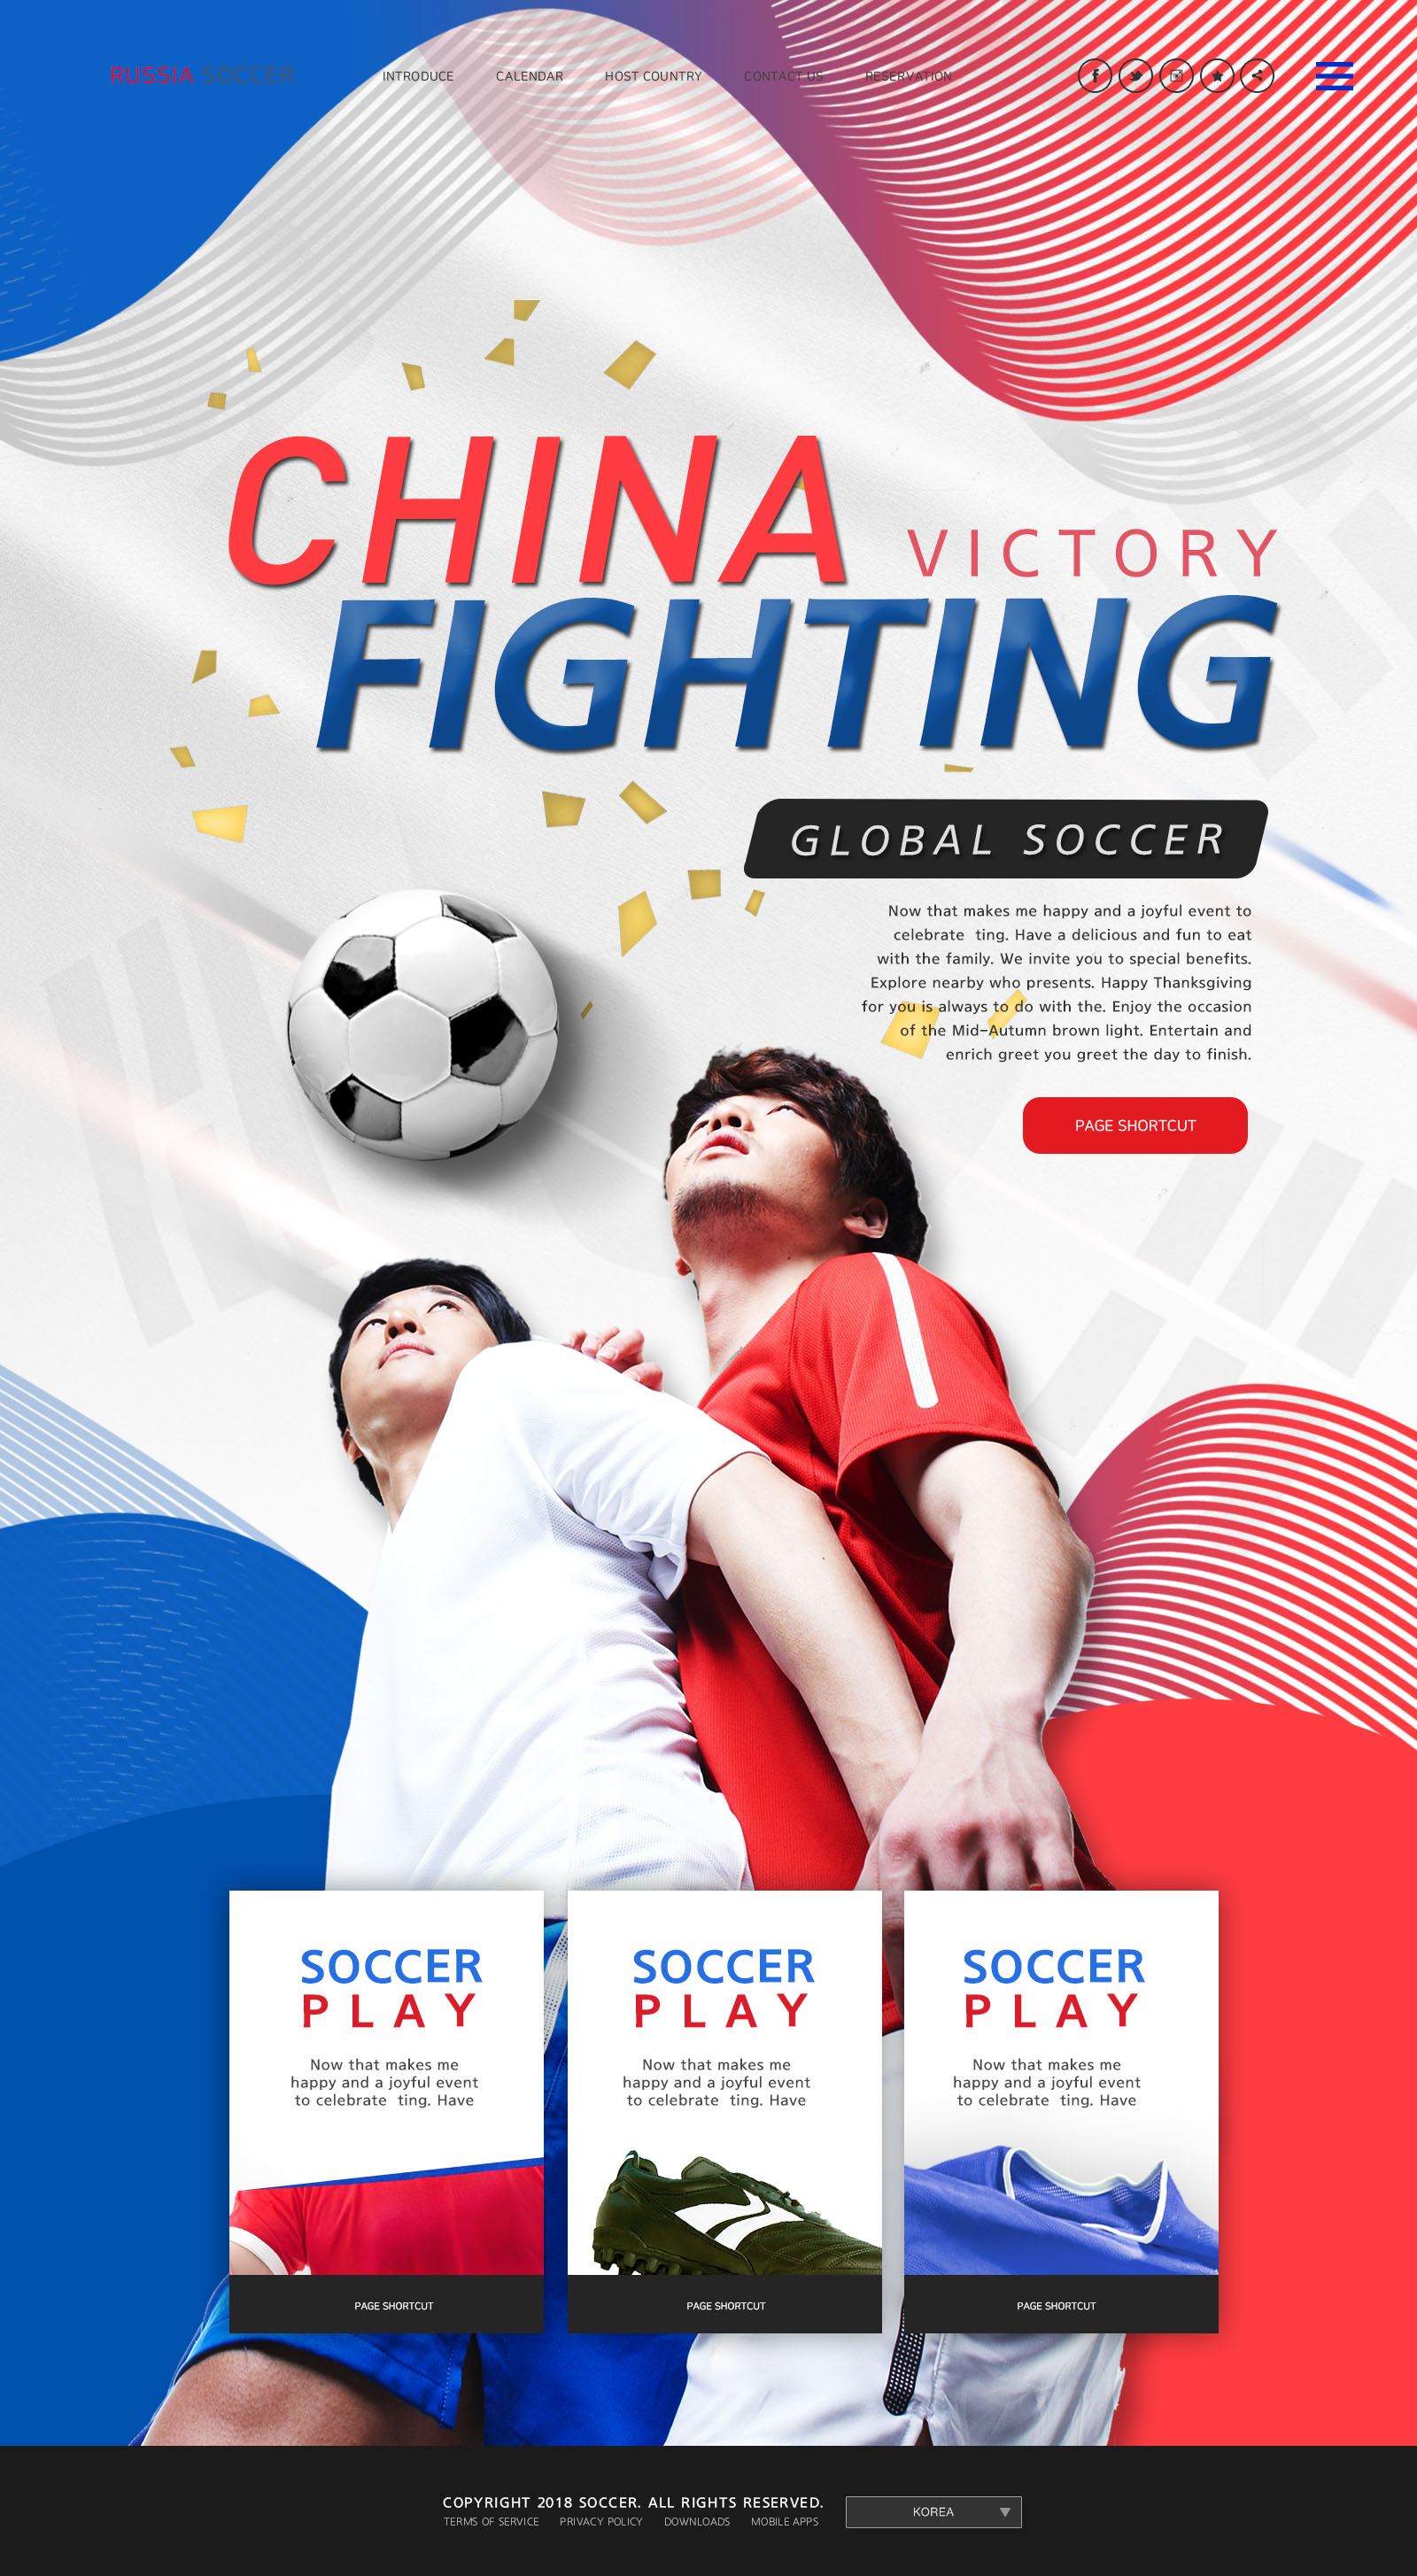 世界杯足球专题广告设计PSD模板蚂蚁素材精选(韩国风格)插图(6)